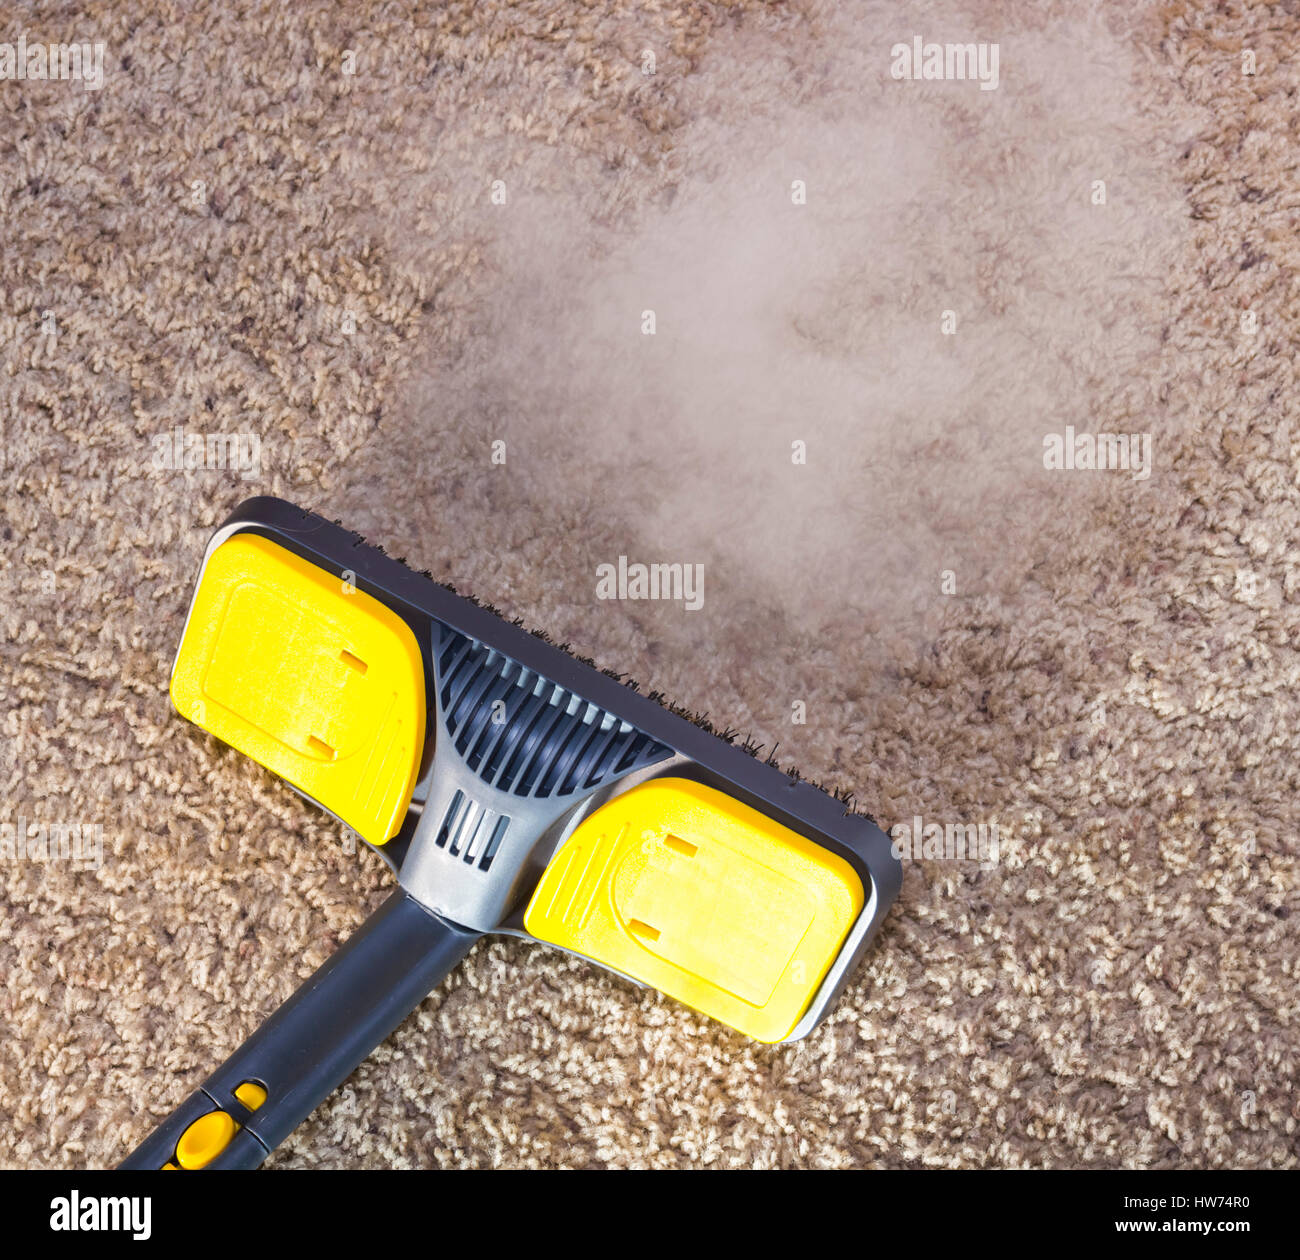 En utilisant un nettoyeur à vapeur sèche pour nettoyer les tapis de sol. Banque D'Images